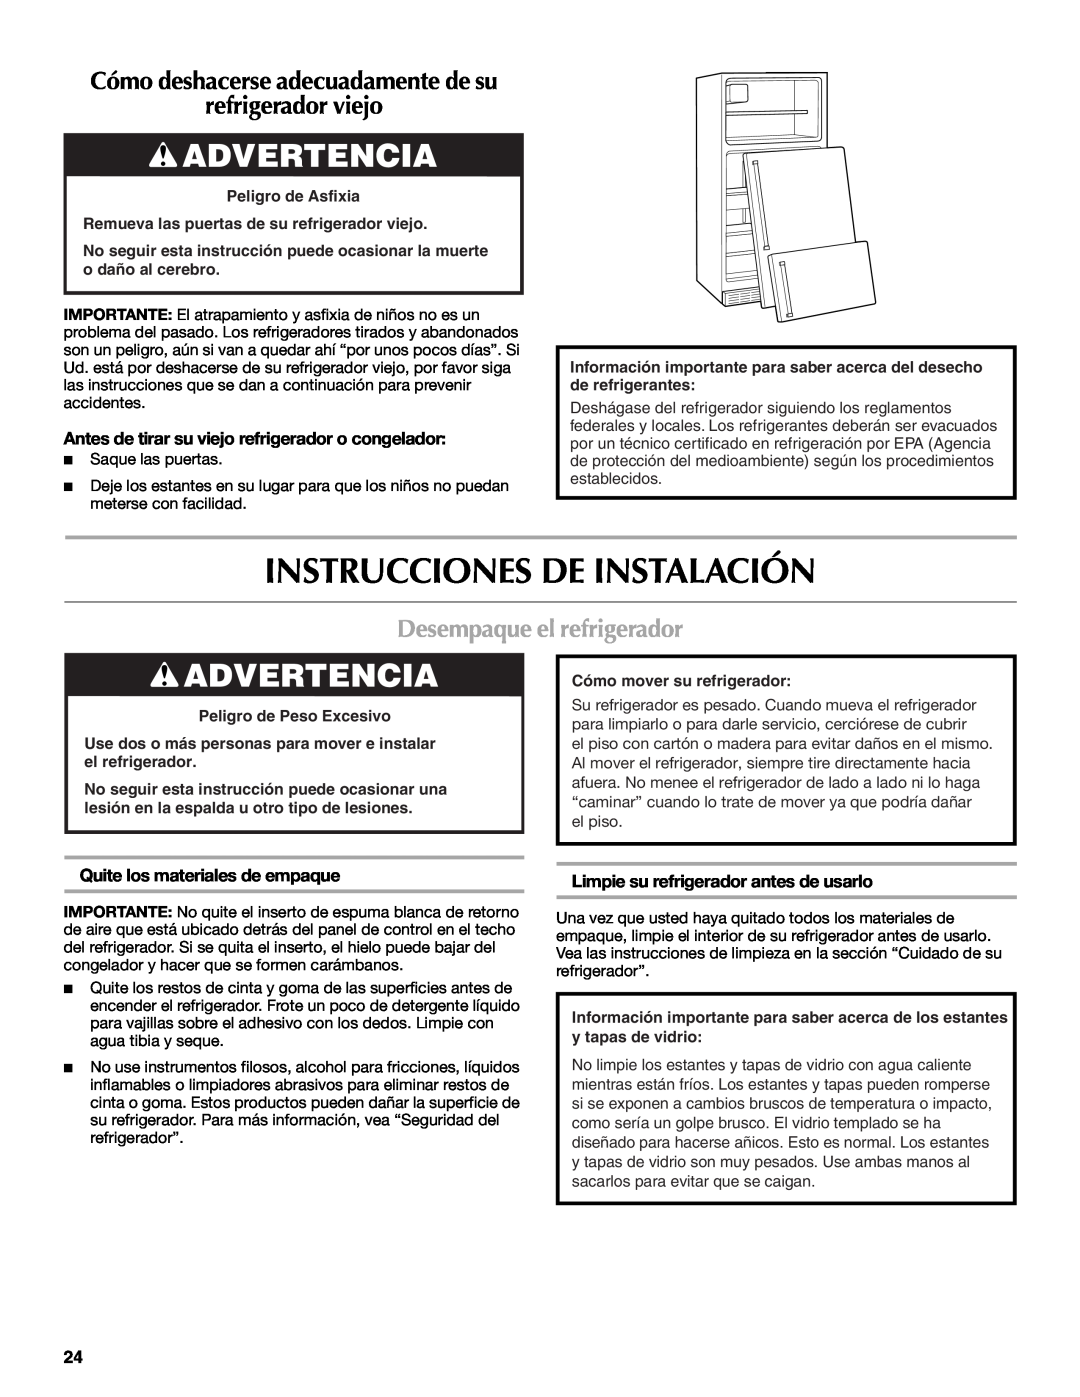 Maytag W10359302A Instrucciones De Instalación, Advertencia, refrigerador viejo, Desempaque el refrigerador 